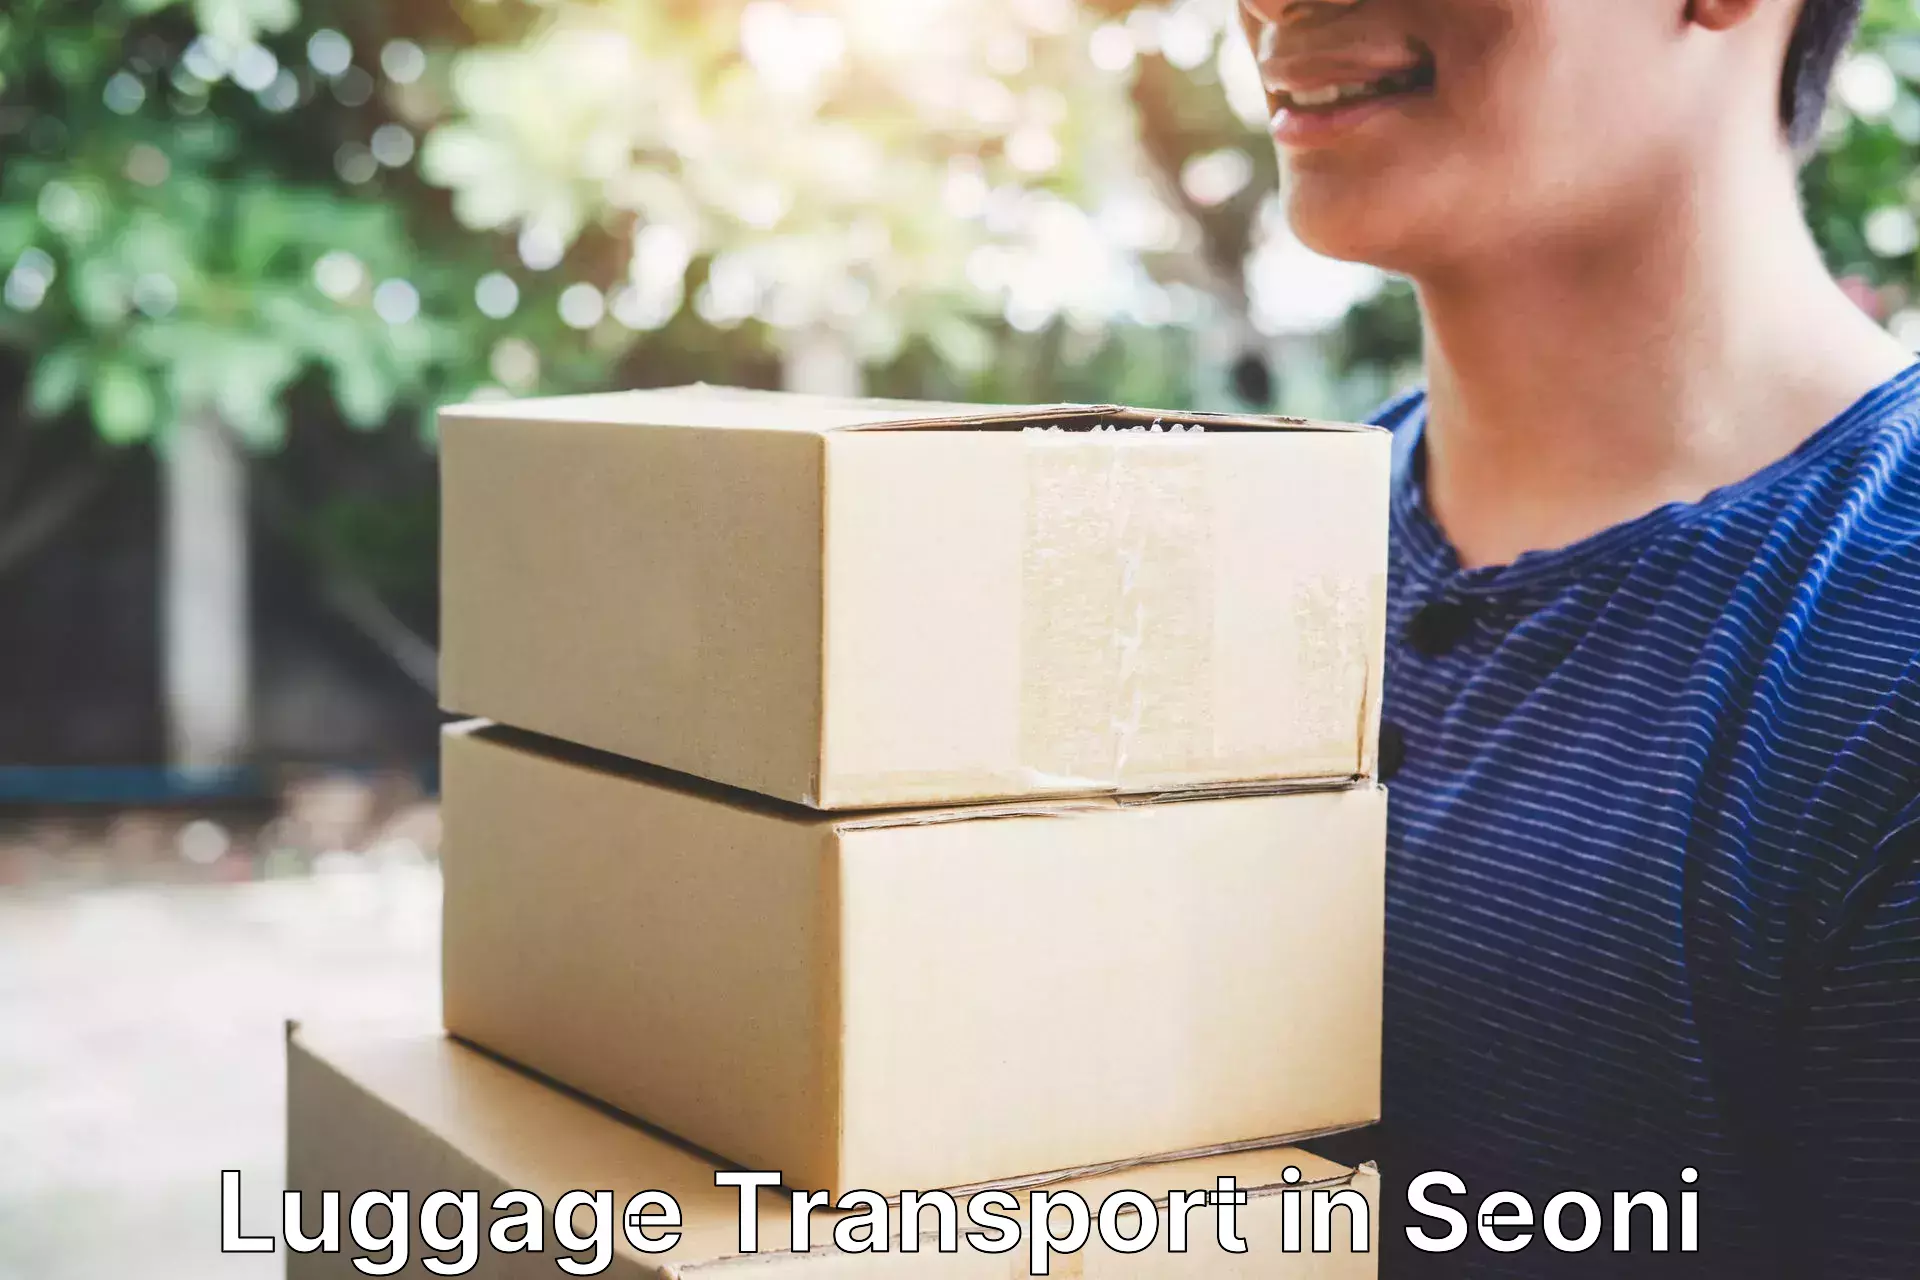 Luggage transport pricing in Seoni